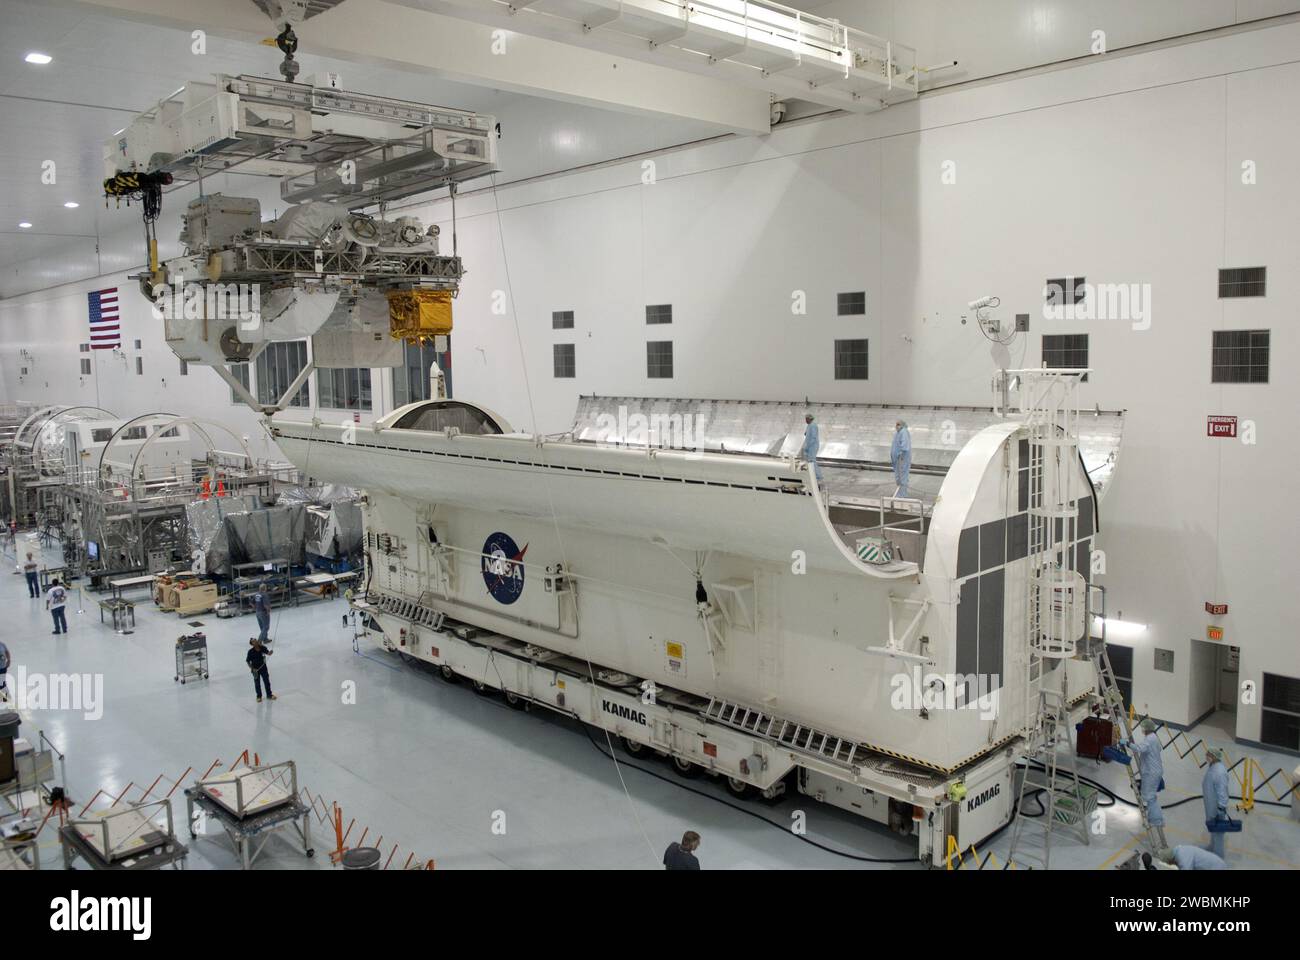 CAPE CANAVERAL, Fla. -- in der Space Station Processing Facility im Kennedy Space Center der NASA in Florida wird Express Logistics Carrier-3 von seinem Hauptarbeitsplatz in einen Nutzlastbehälter verlegt. Der Kanister wird die raumgebundene Nutzlast auf der Reise zum Launch Pad 39A schützen, wo sie später im Nutzlastbereich des Space Shuttle Endeavour installiert wird. ELC-3 ist mit einer Vielzahl von Ersatzteilen für die Internationale Raumstation ausgestattet, einschließlich zwei S-Band-Kommunikationsantennen, einem Hochdruckgastank, zusätzlichen Ersatzteilen für Dextre und Mikrometeoroid-Abschirmungen. ELC-3 wird fliegen Stockfoto